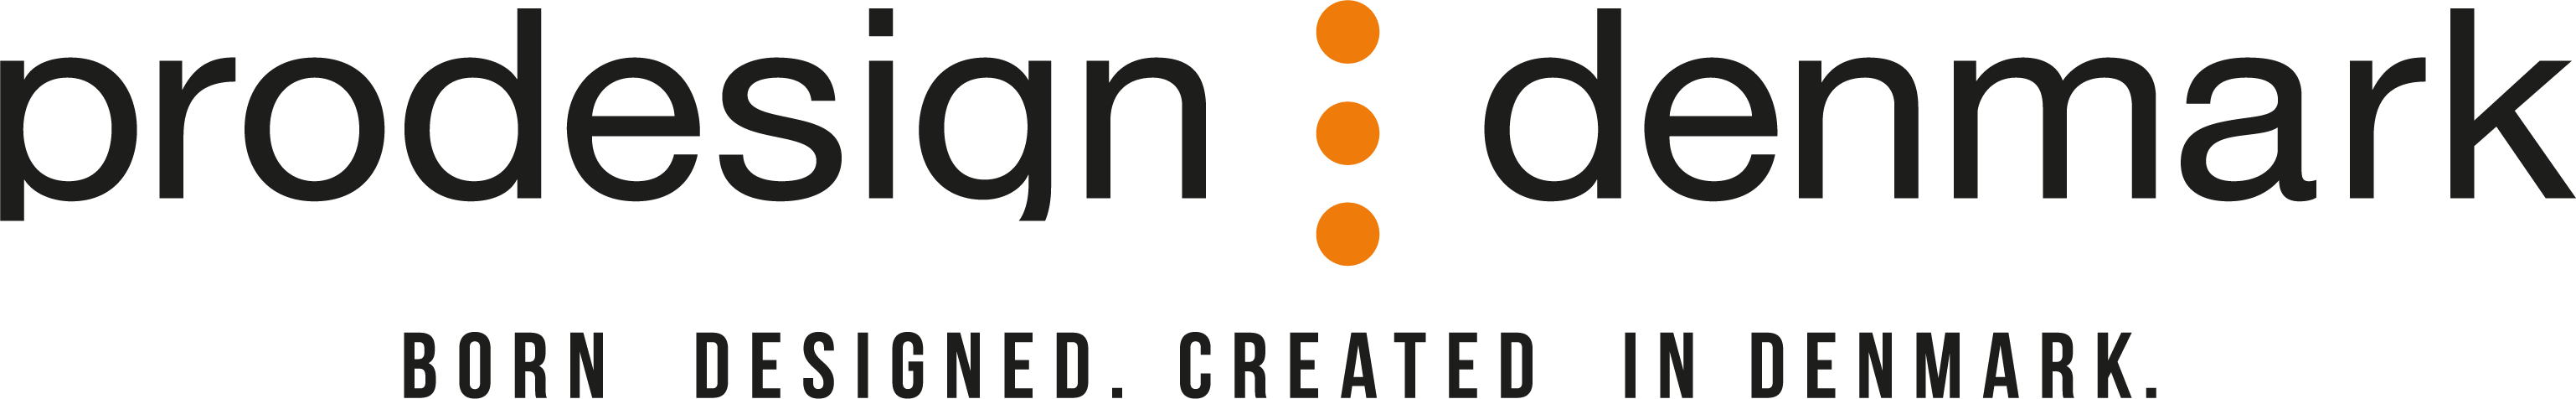 Prodesign Denmark -logo